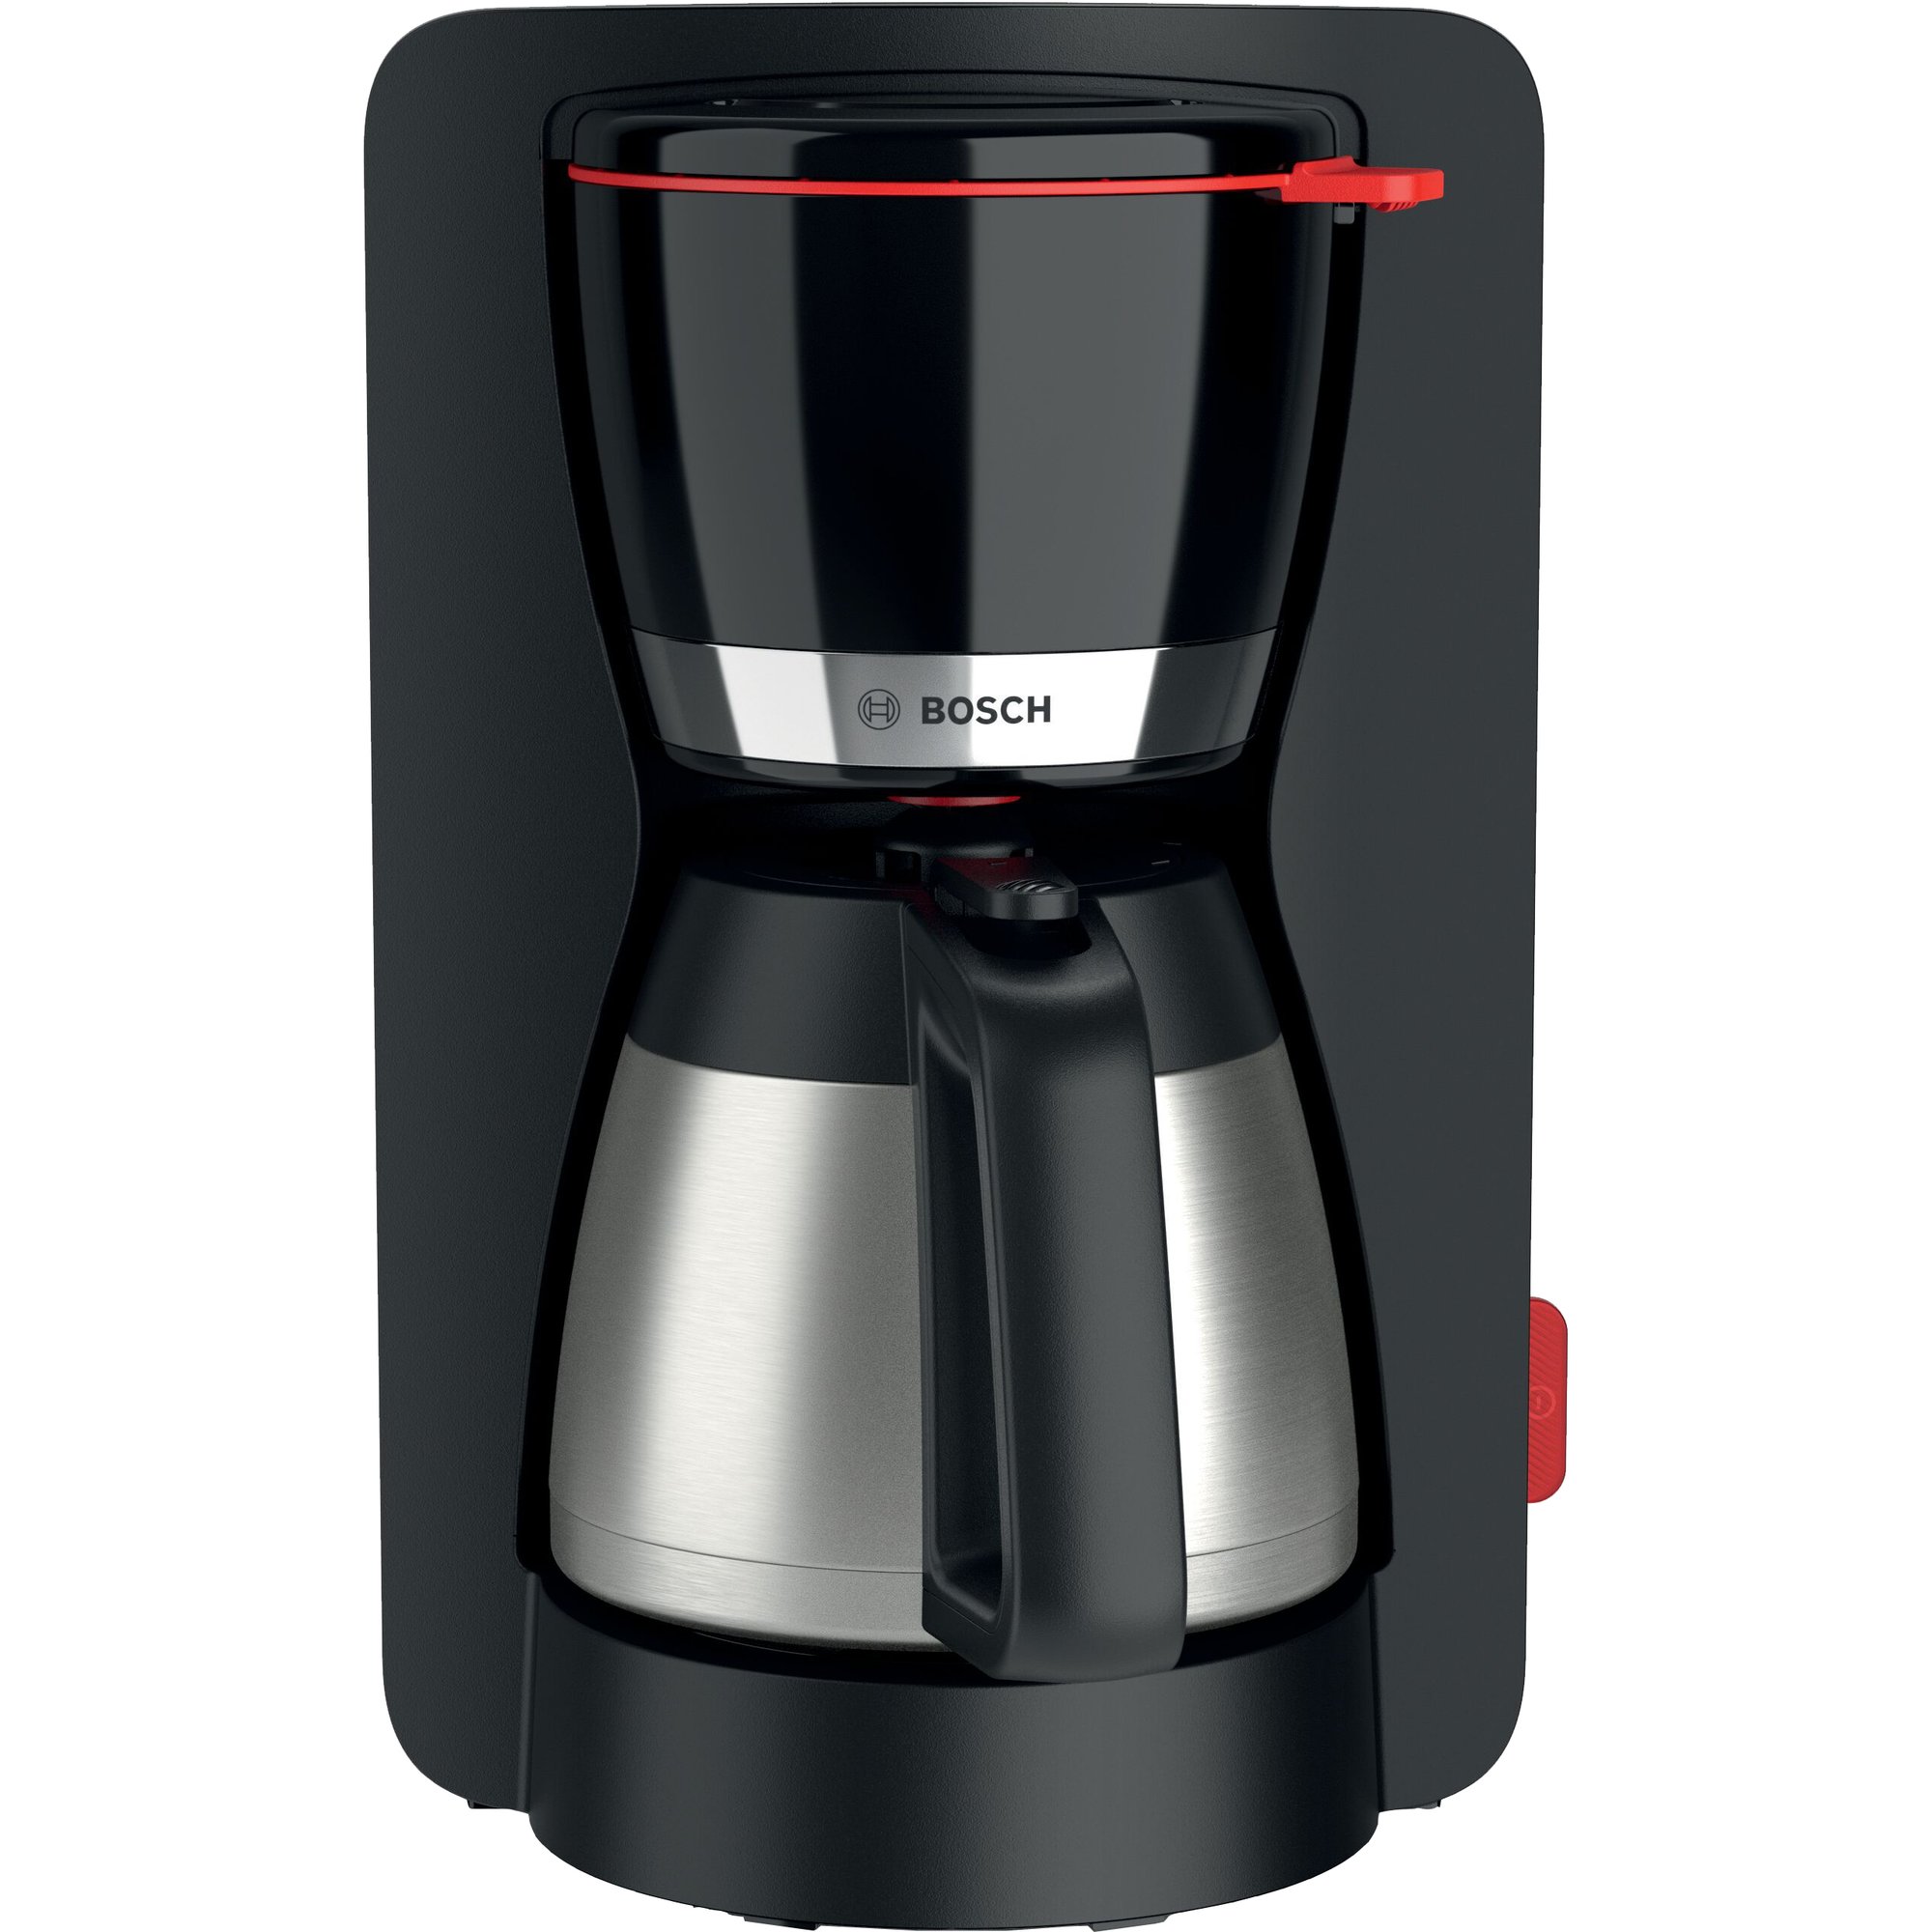 Bosch MyMoment kaffebryggare med termosflaska svart